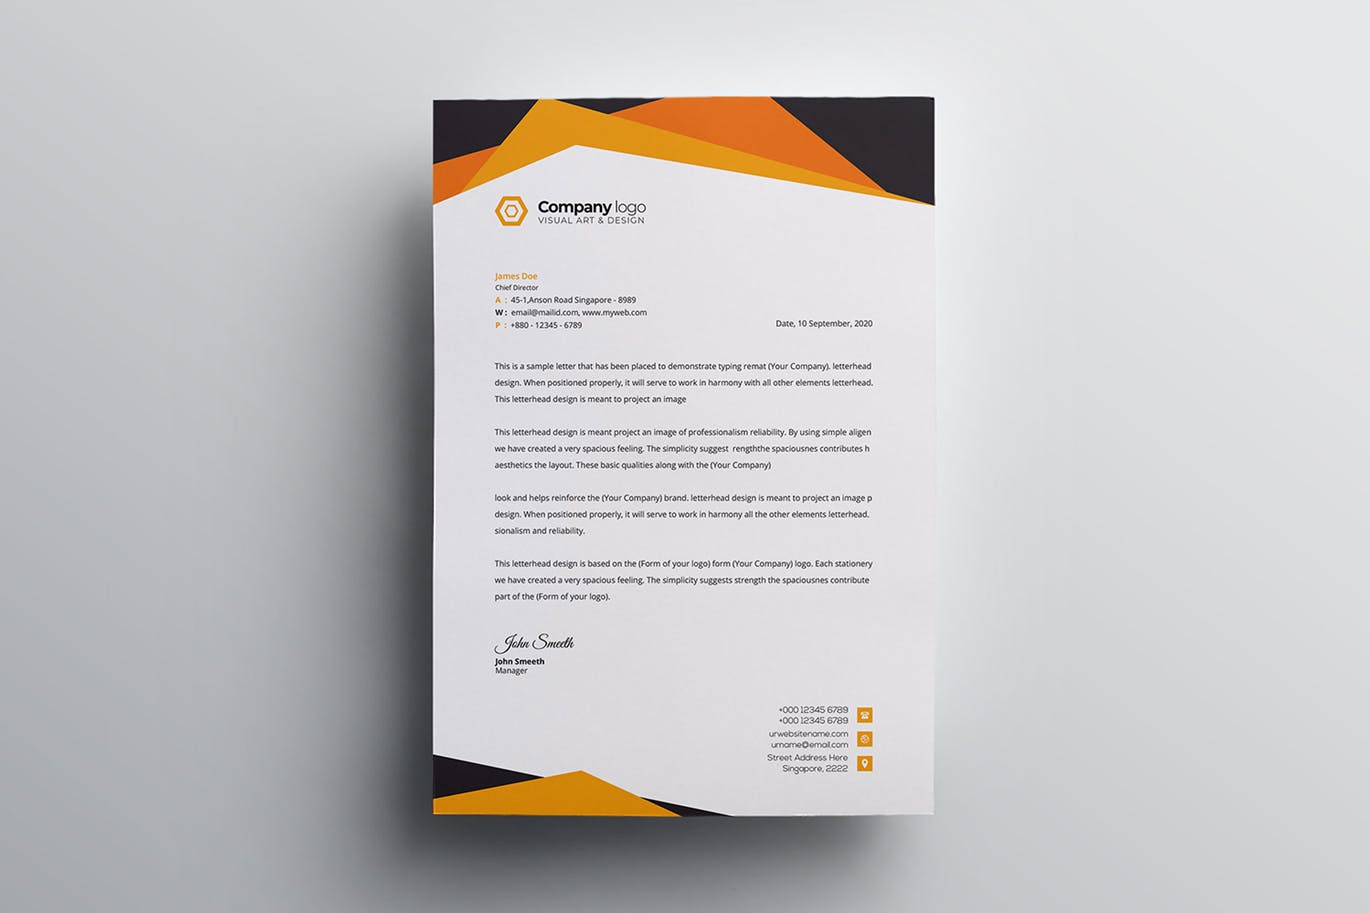 信息科技企业信封设计模板v2 Letterhead插图(2)